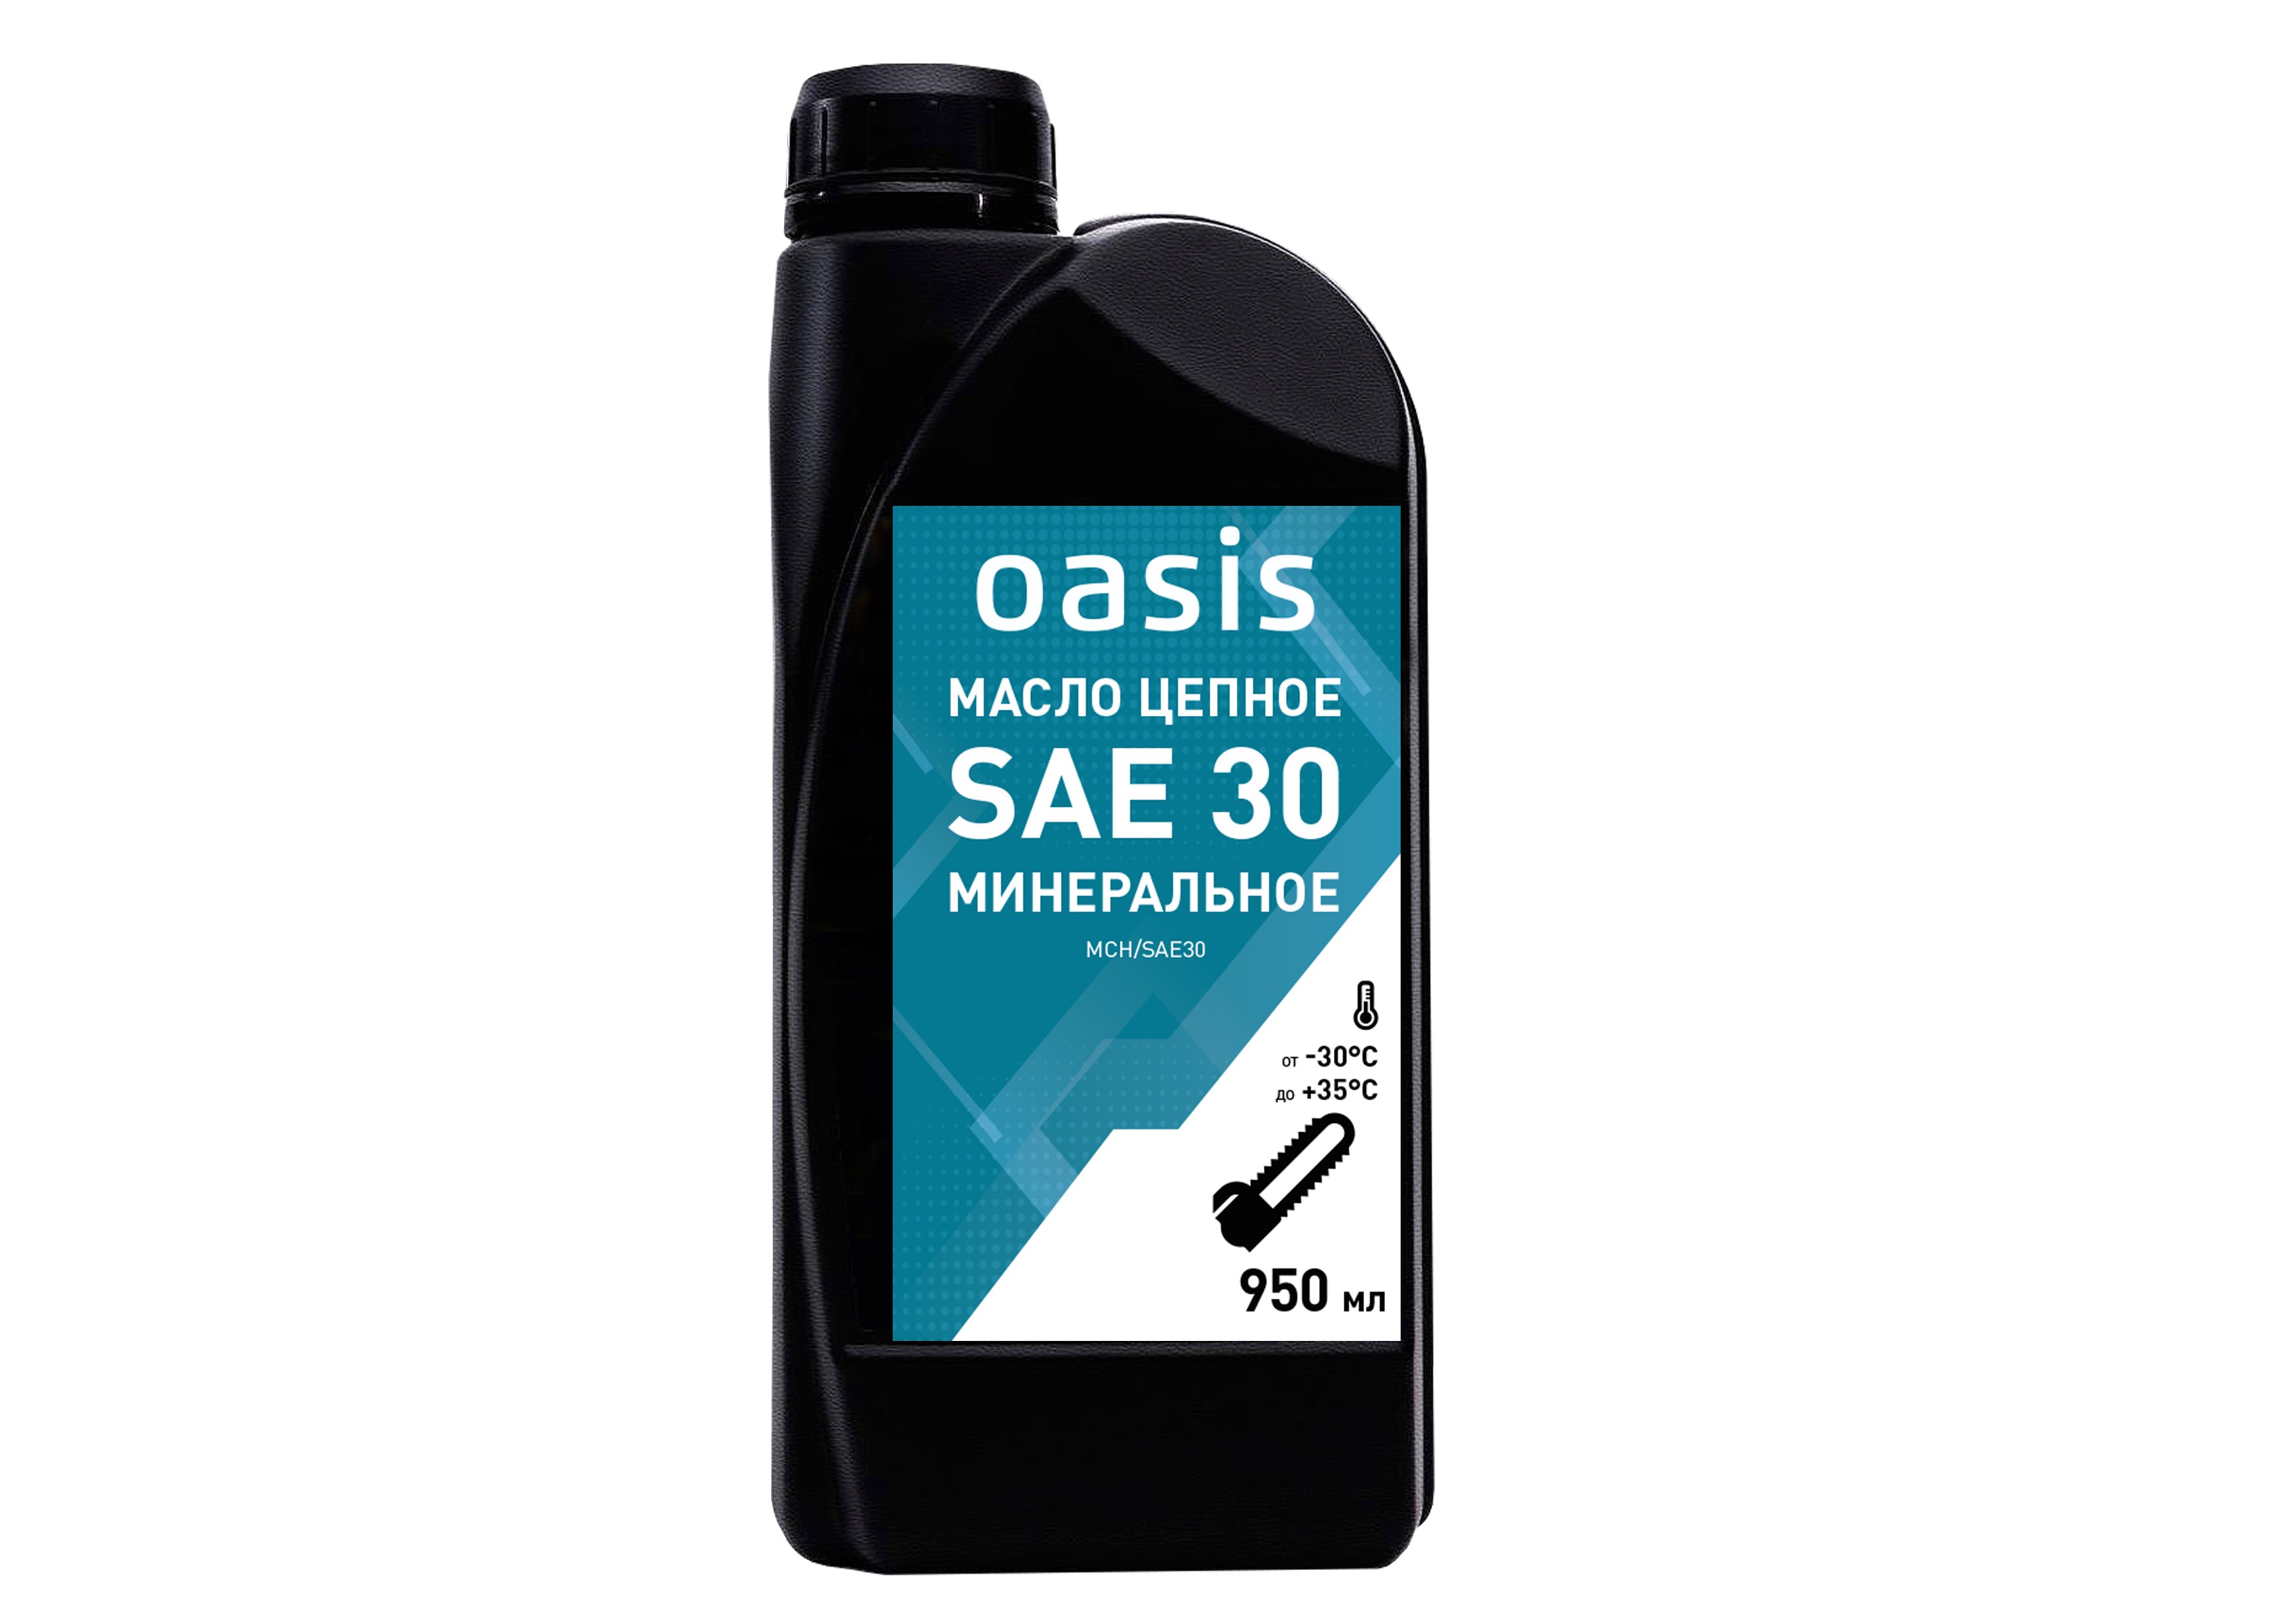 Масло цепное минеральное SAE 30 Oasis MCH/SAE30 (Изображение 1)